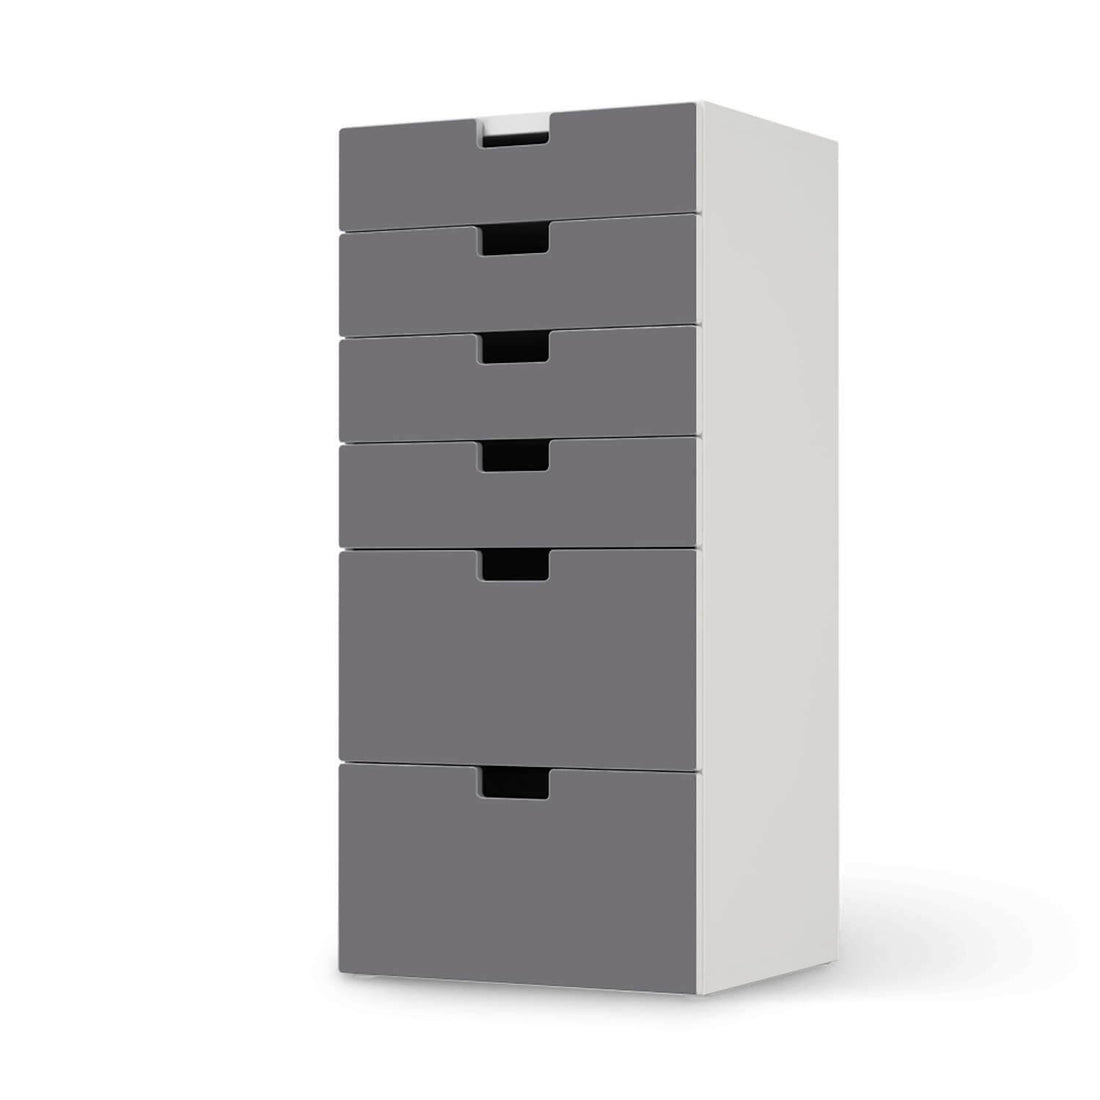 Klebefolie für Möbel Grau Light - IKEA Stuva Kommode - 6 Schubladen  - weiss